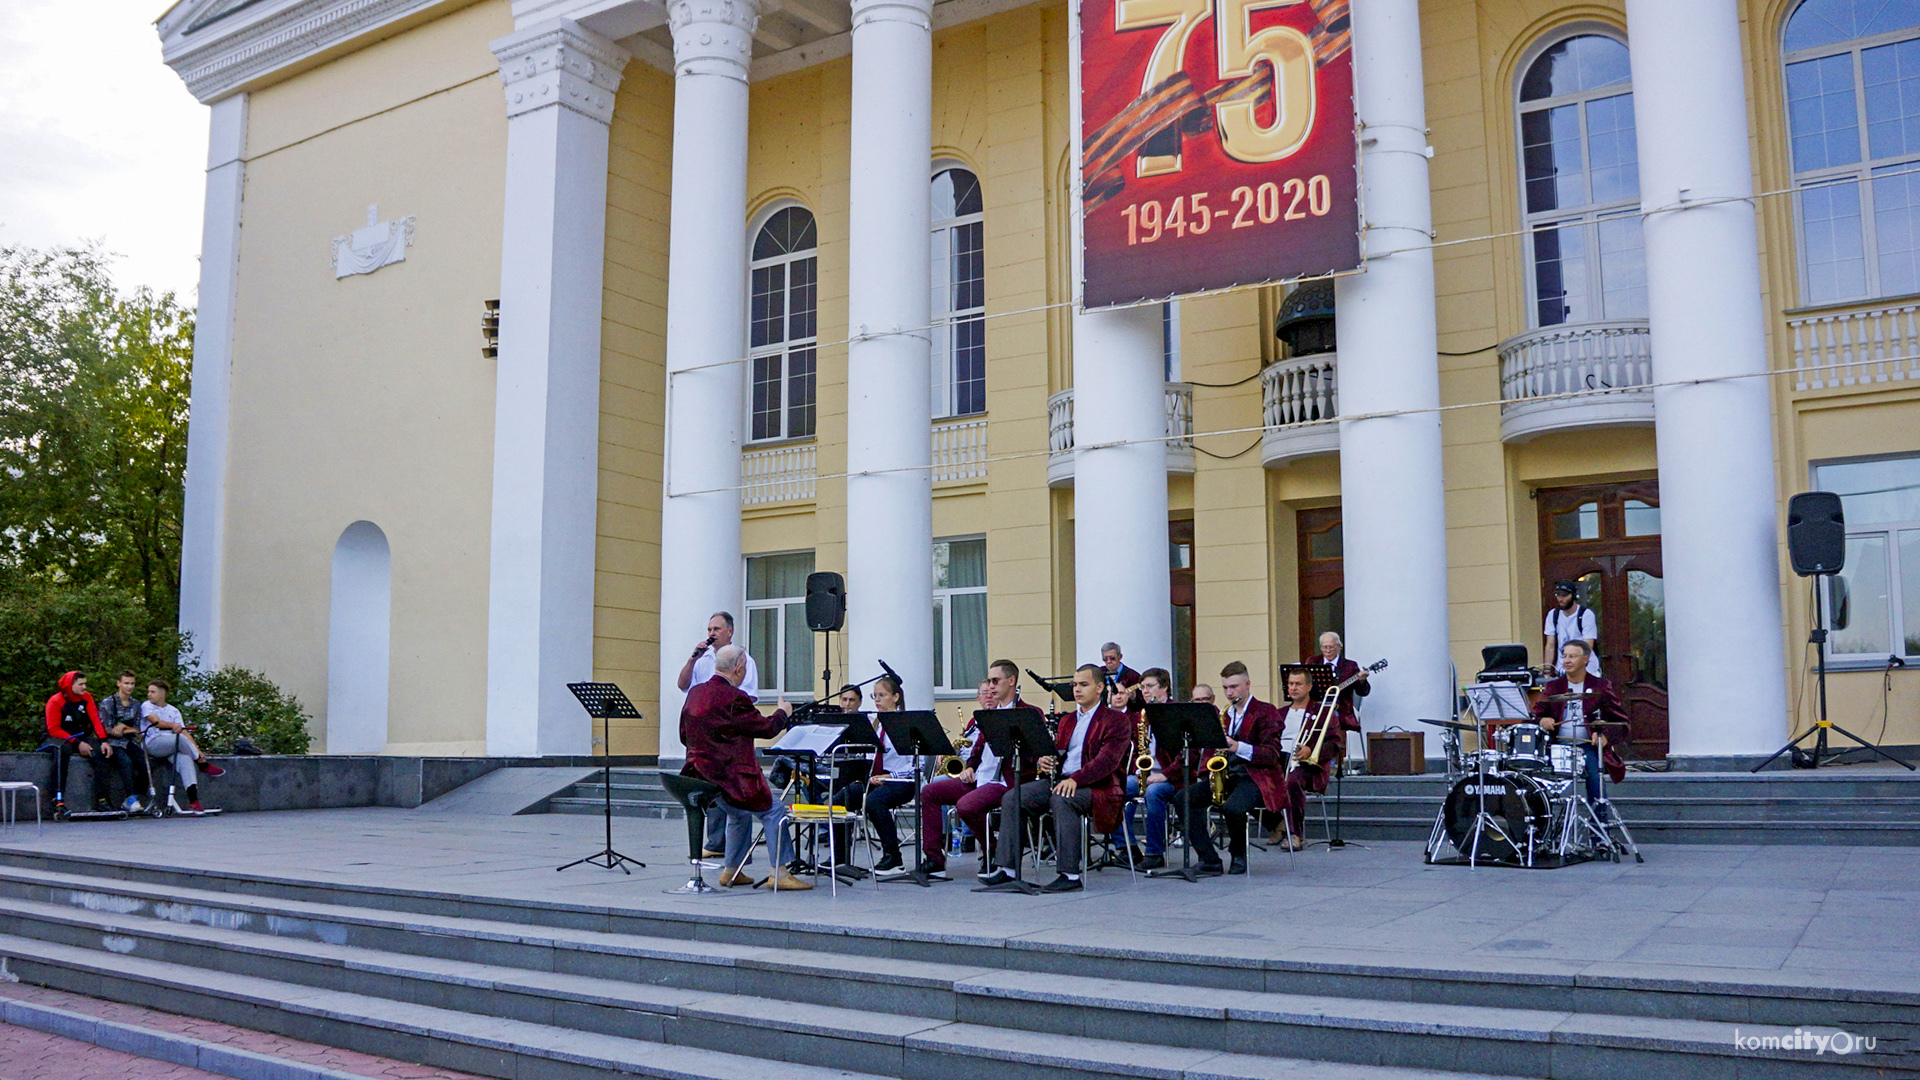 Оркестр Юрковского будет давать уличные концерты по воскресеньям в течение сентября